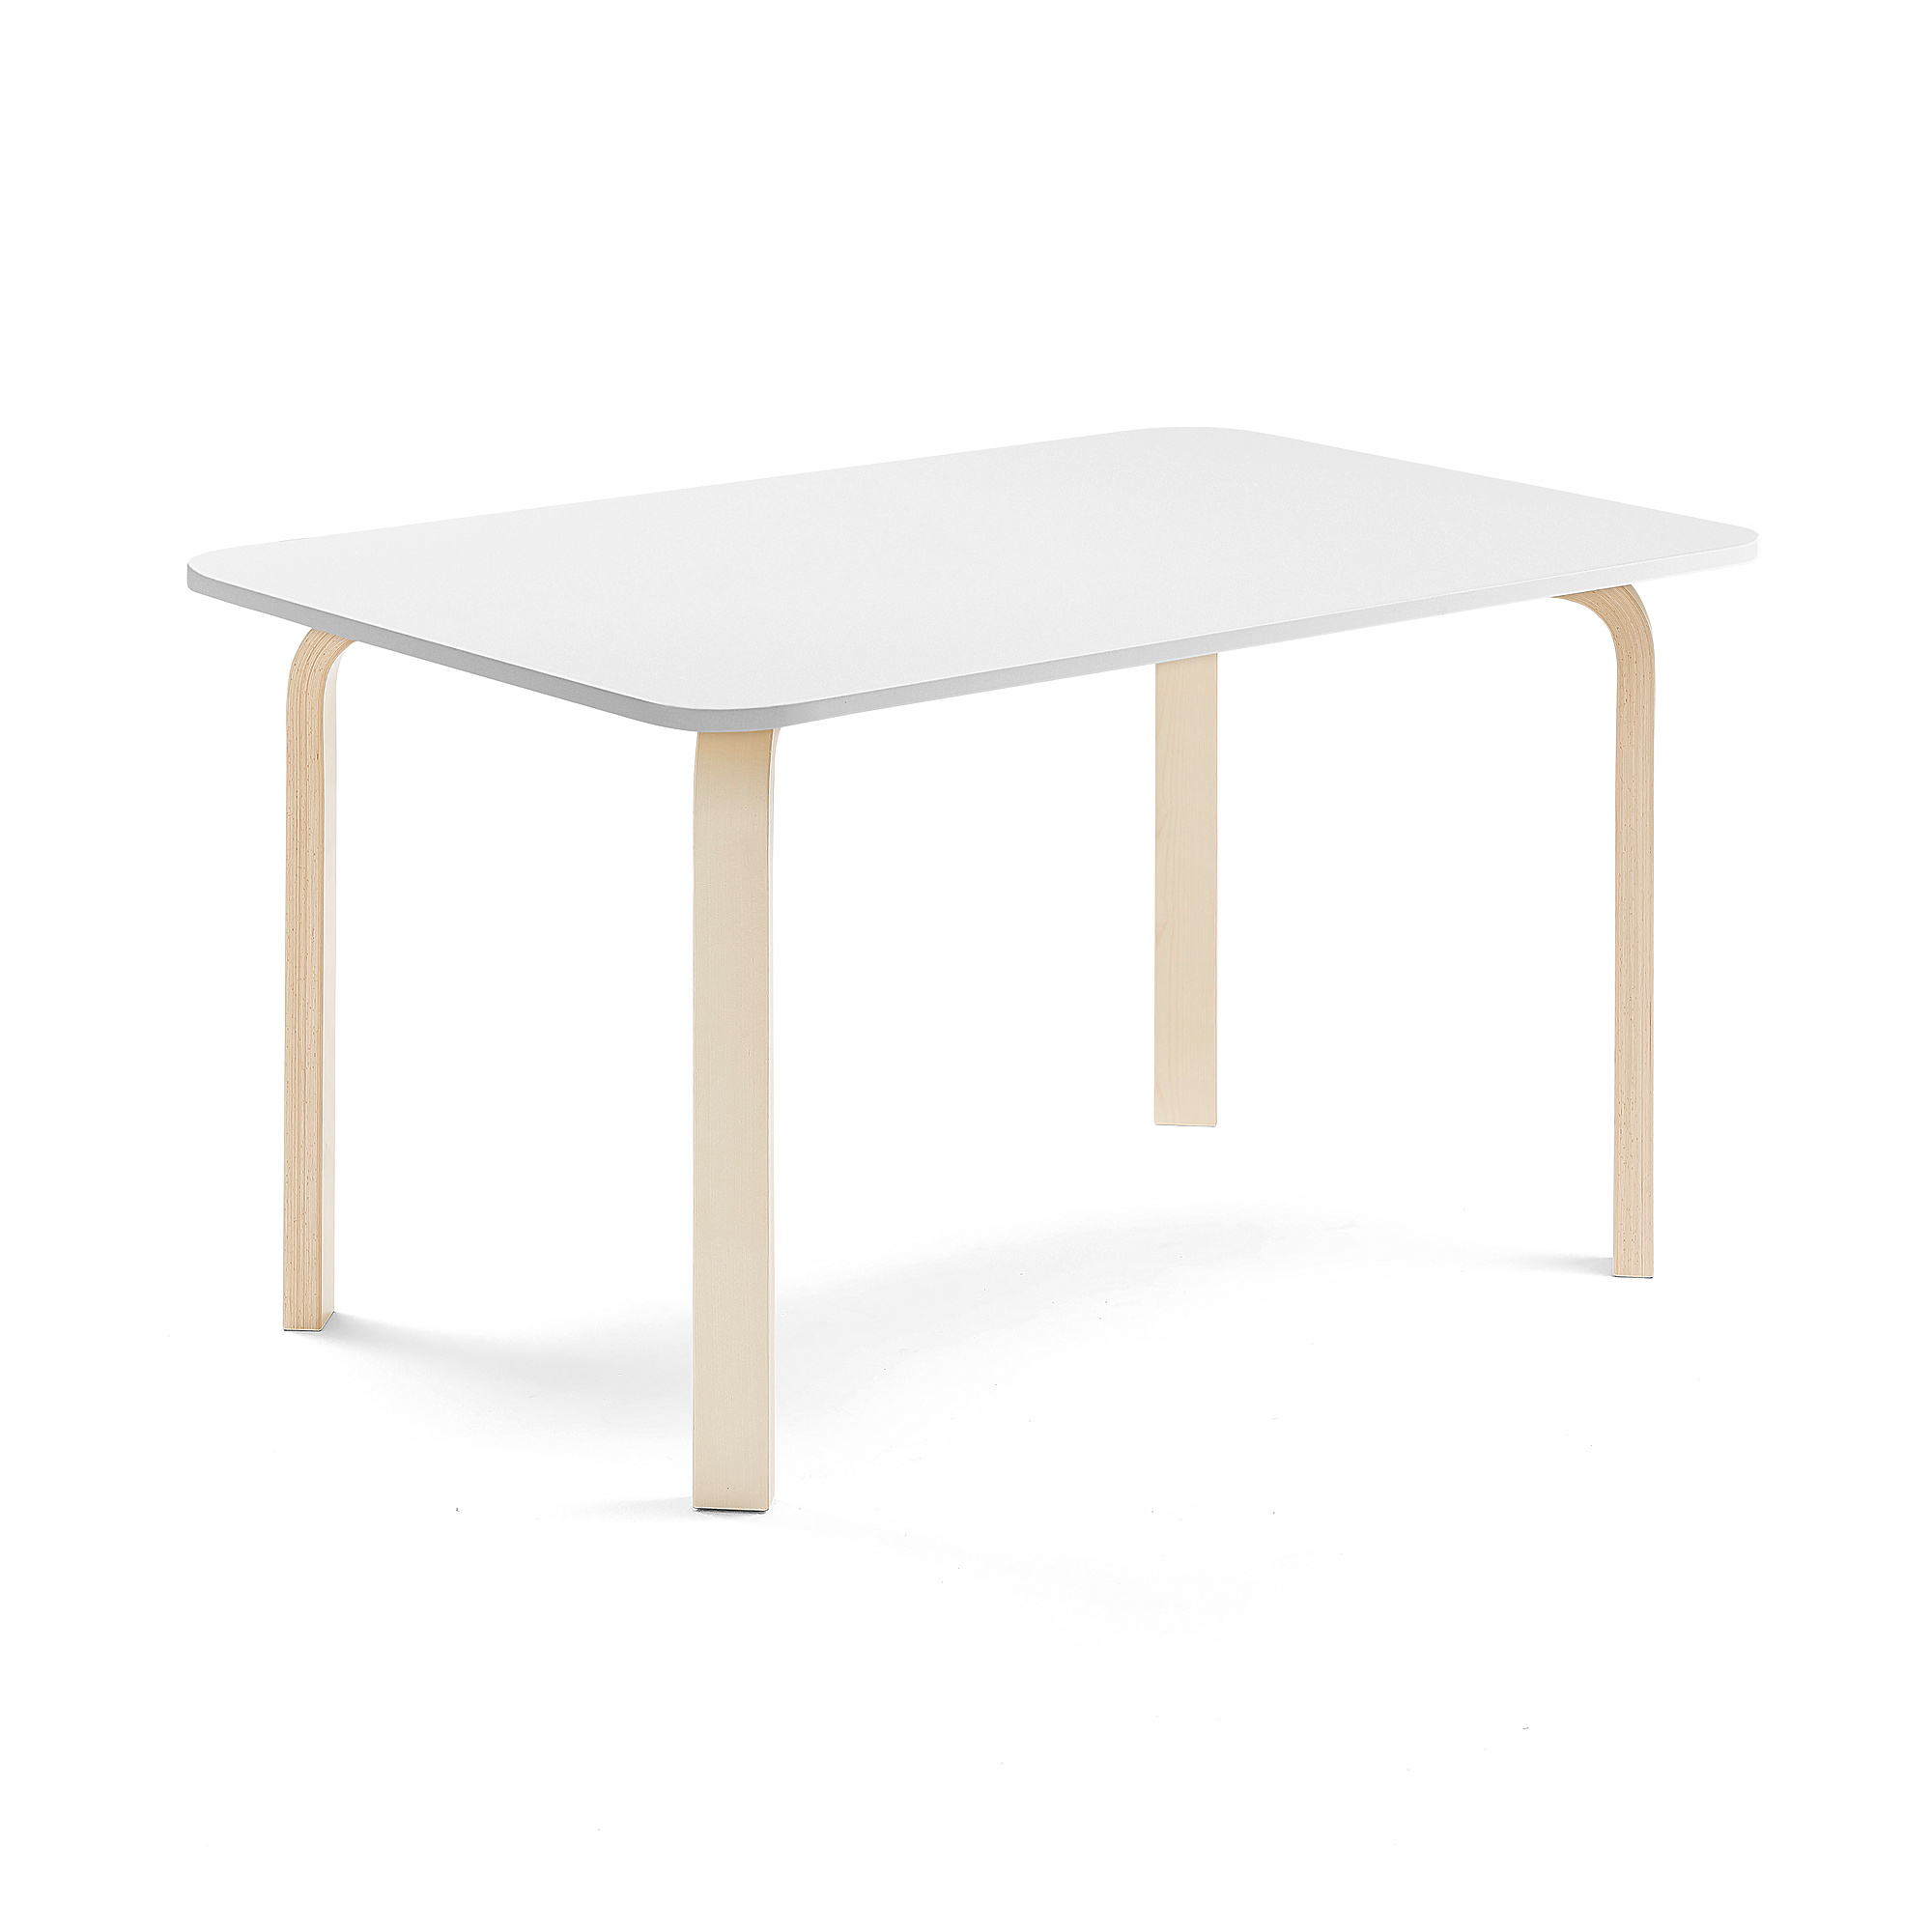 Stůl ELTON, 1200x800x640 mm, bříza, akustická HPL deska, bílá